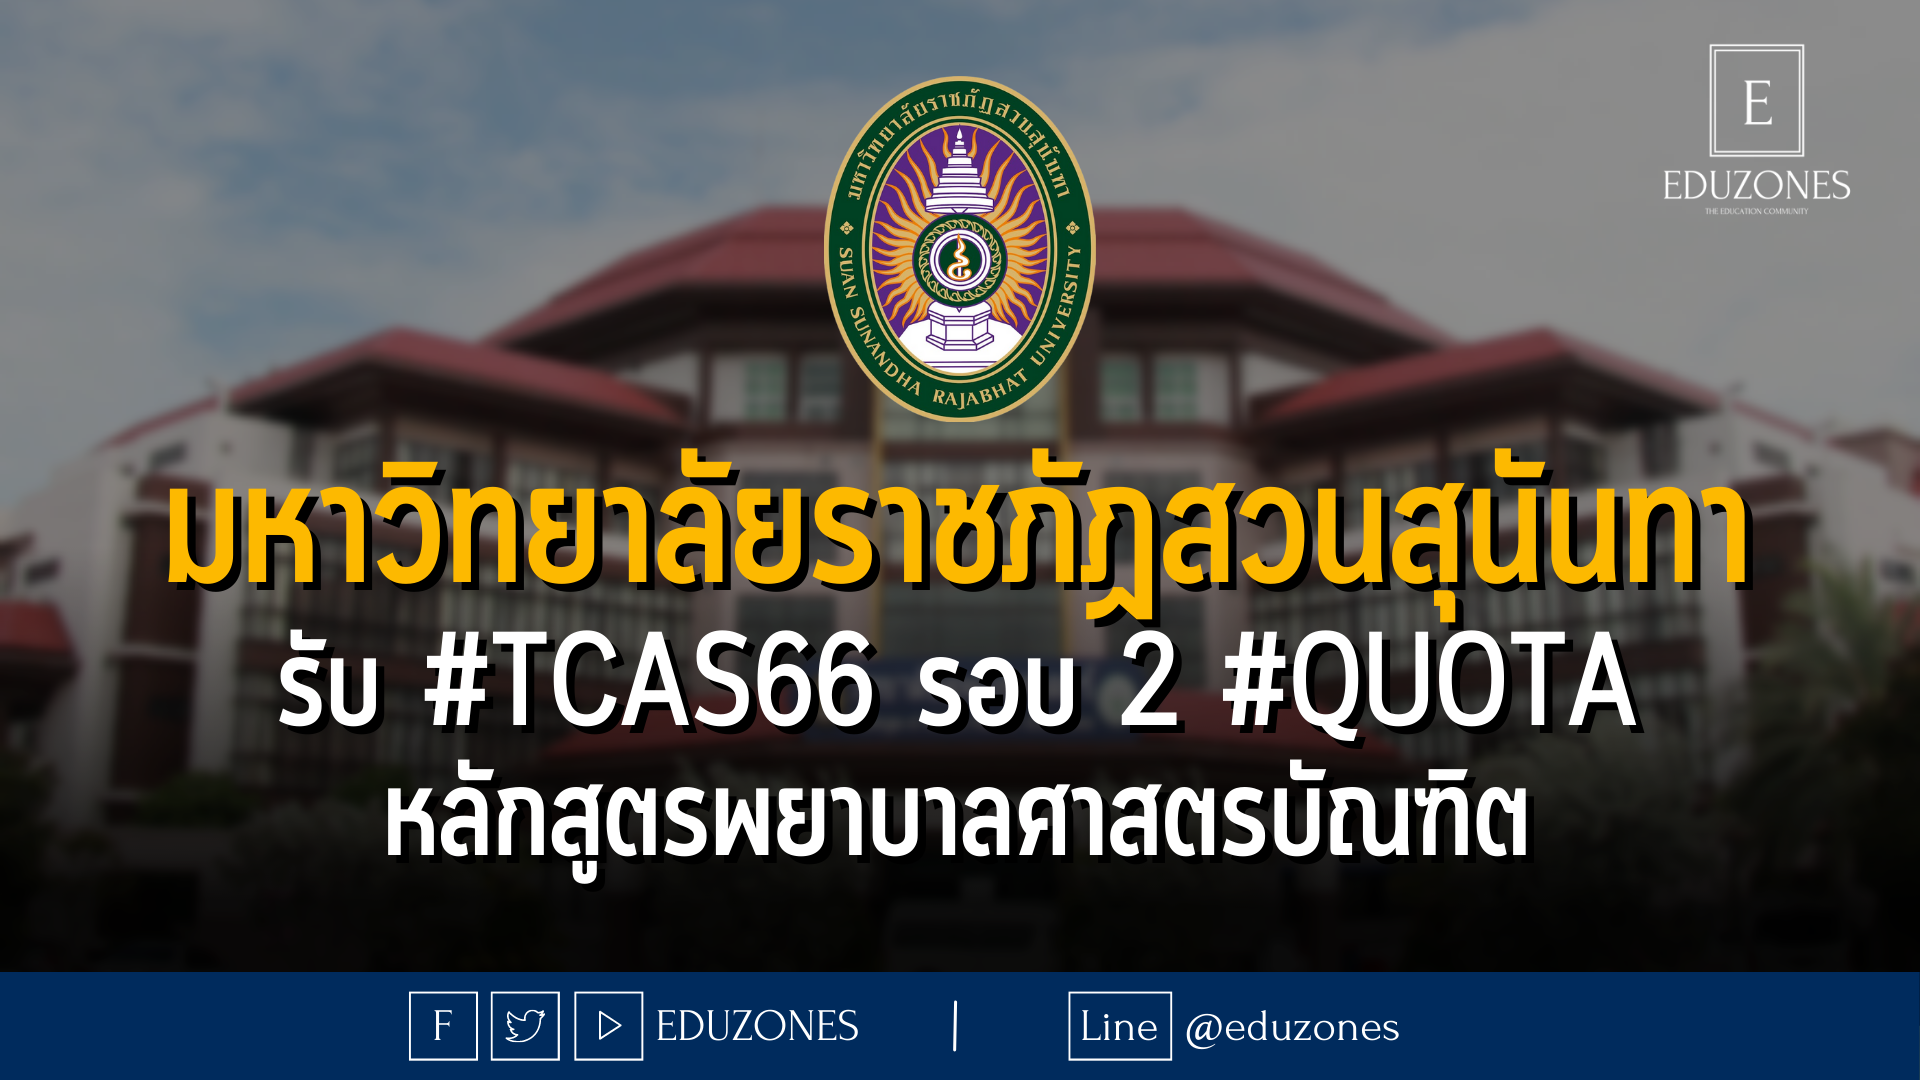 มหาวิทยาลัยราชภัฏสวนสุนันทา รับ #TCAS66 รอบ 2 #QUOTA หลักสูตรพยาบาลศาสตรบัณฑิต